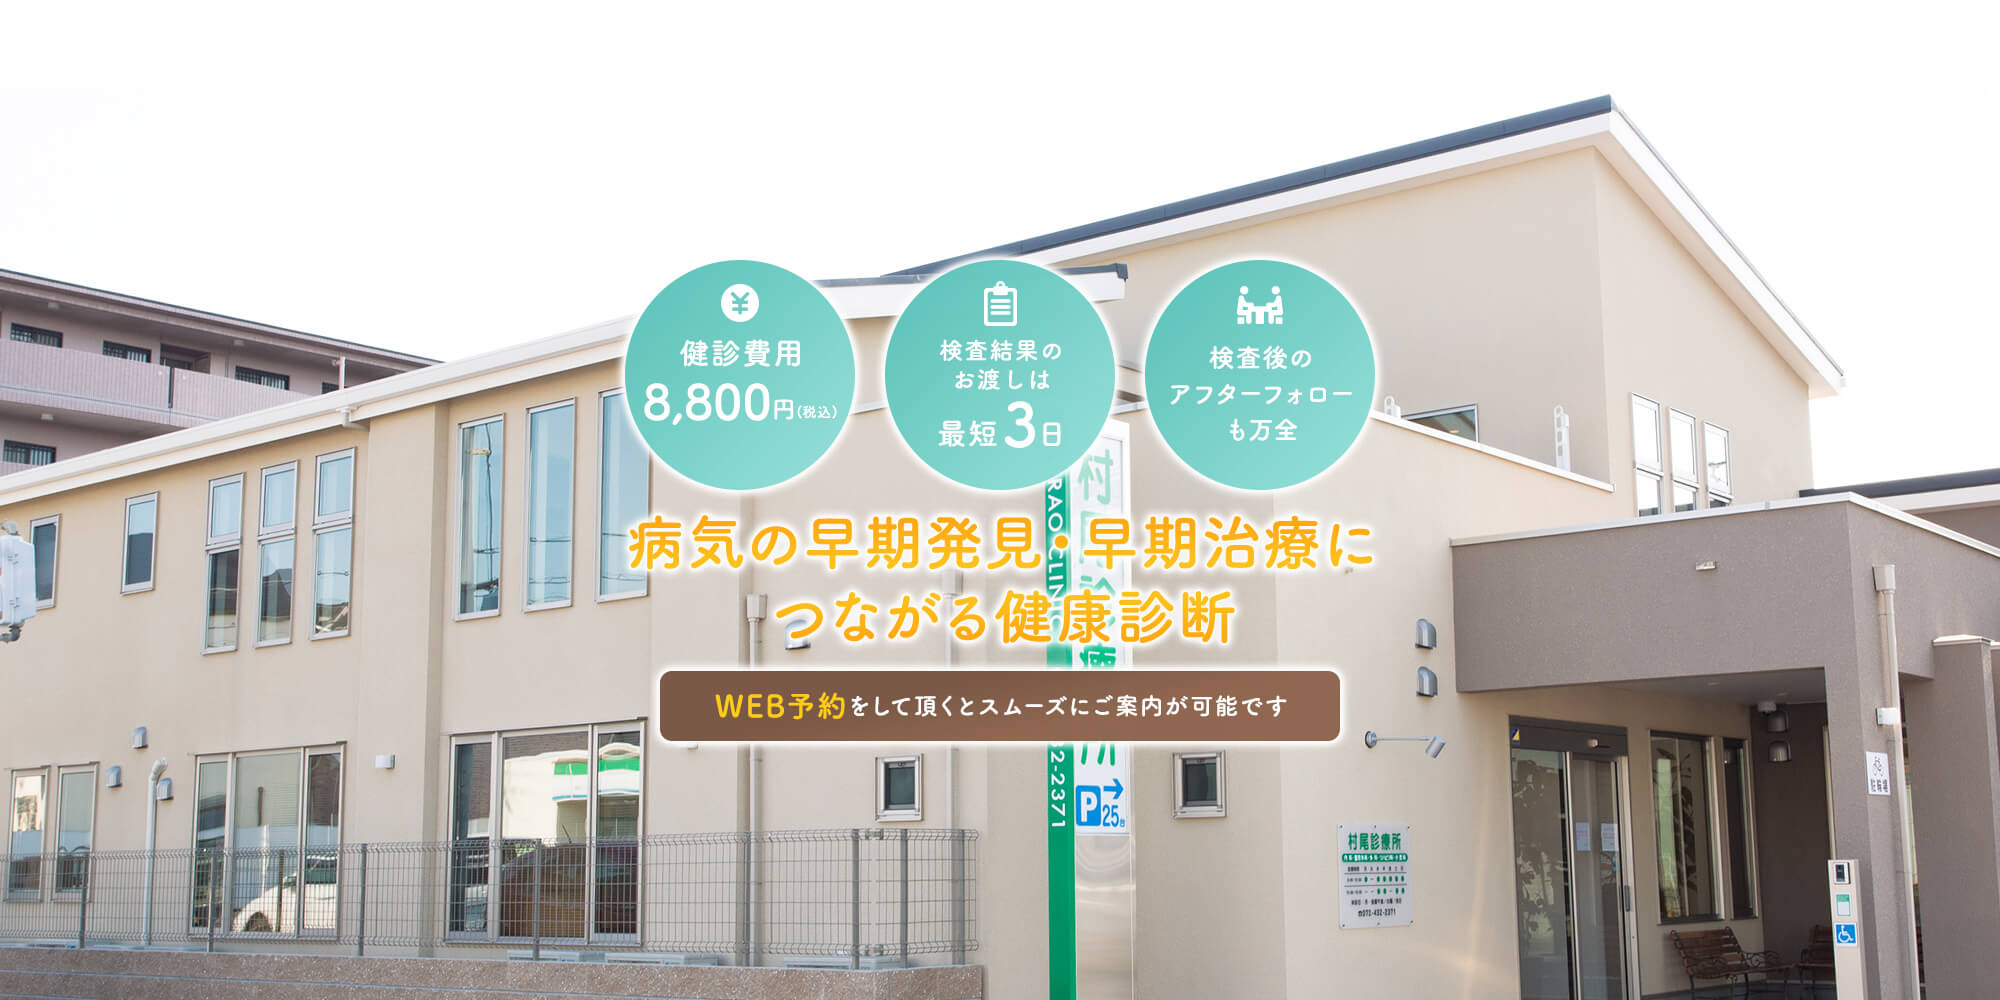 【村尾診療所】岸和田・貝塚で病気の早期発見・早期治療につながる健康診断